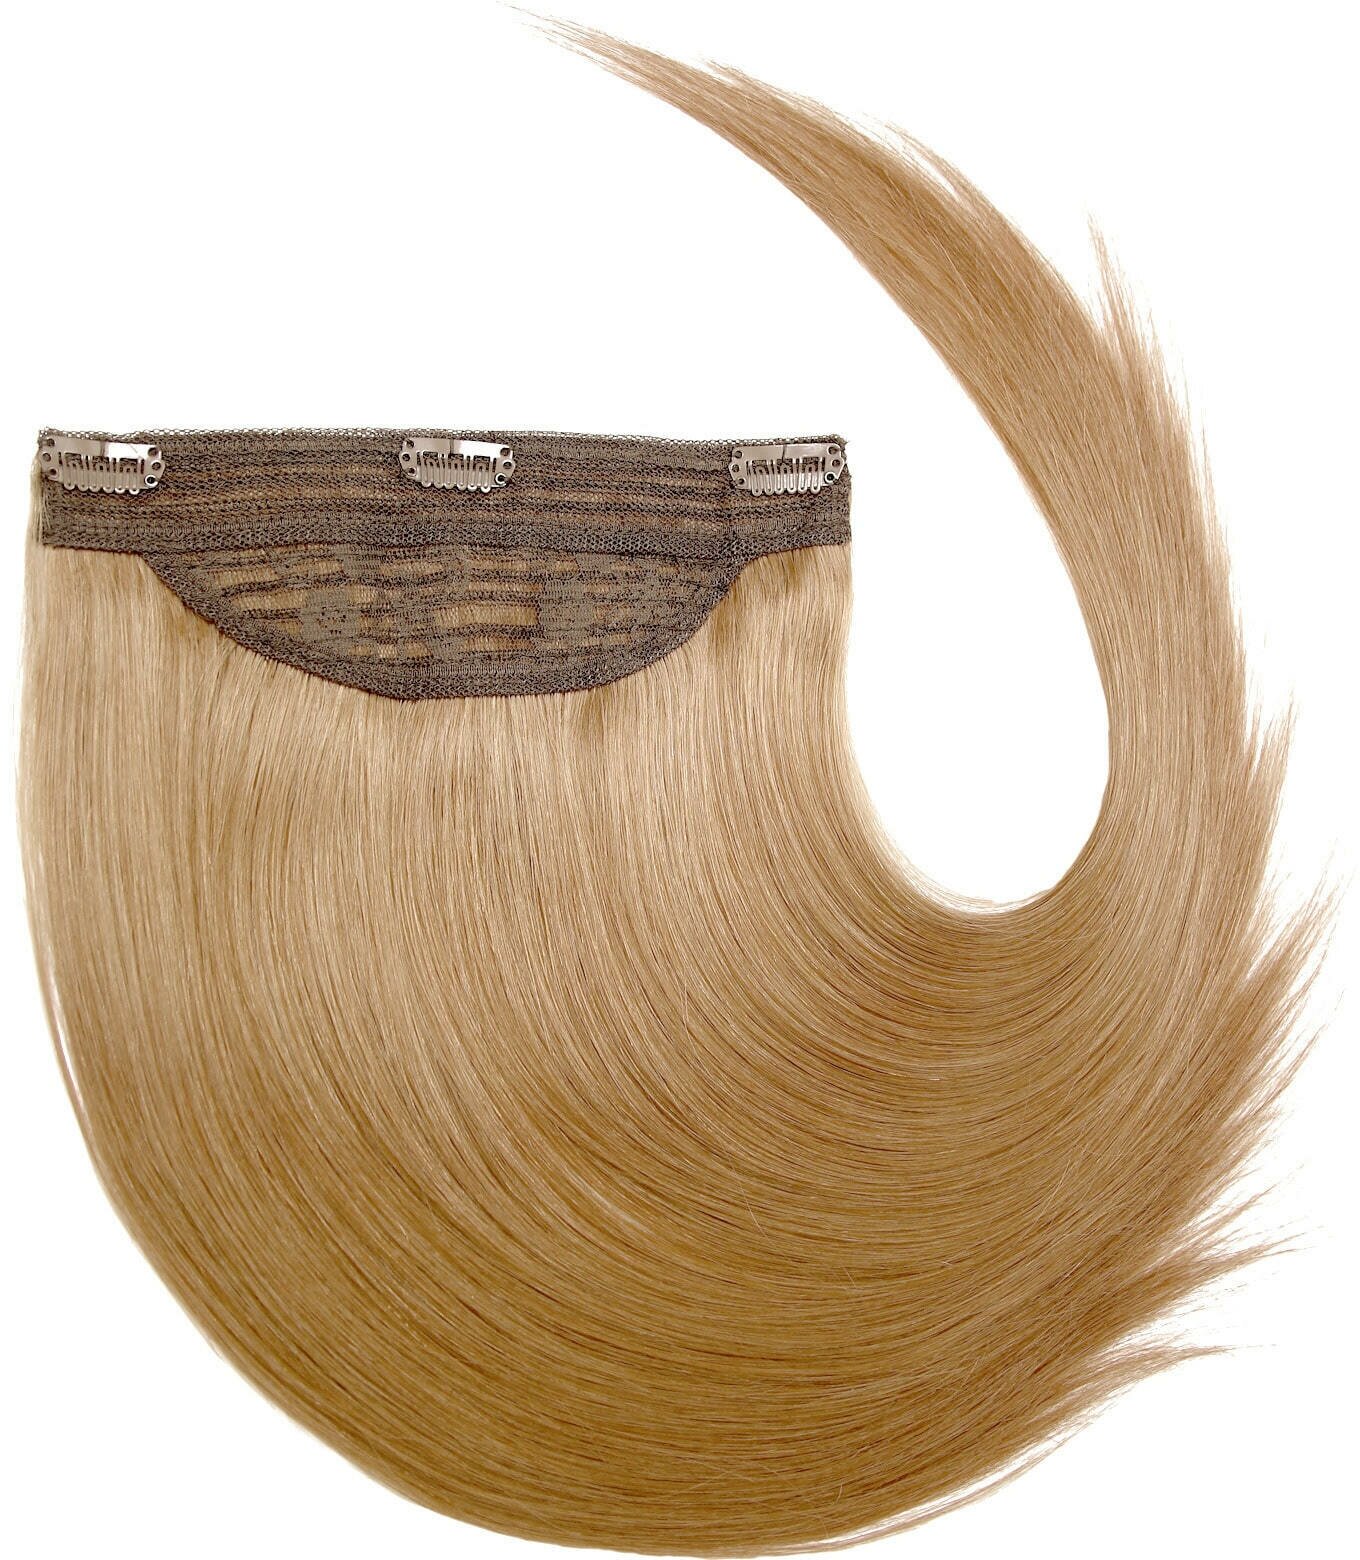 Hairshop Волосы на заколках Джульетта 8.3 (14) прямая 40 см 60гр. (Cветлый золотисто-русый)